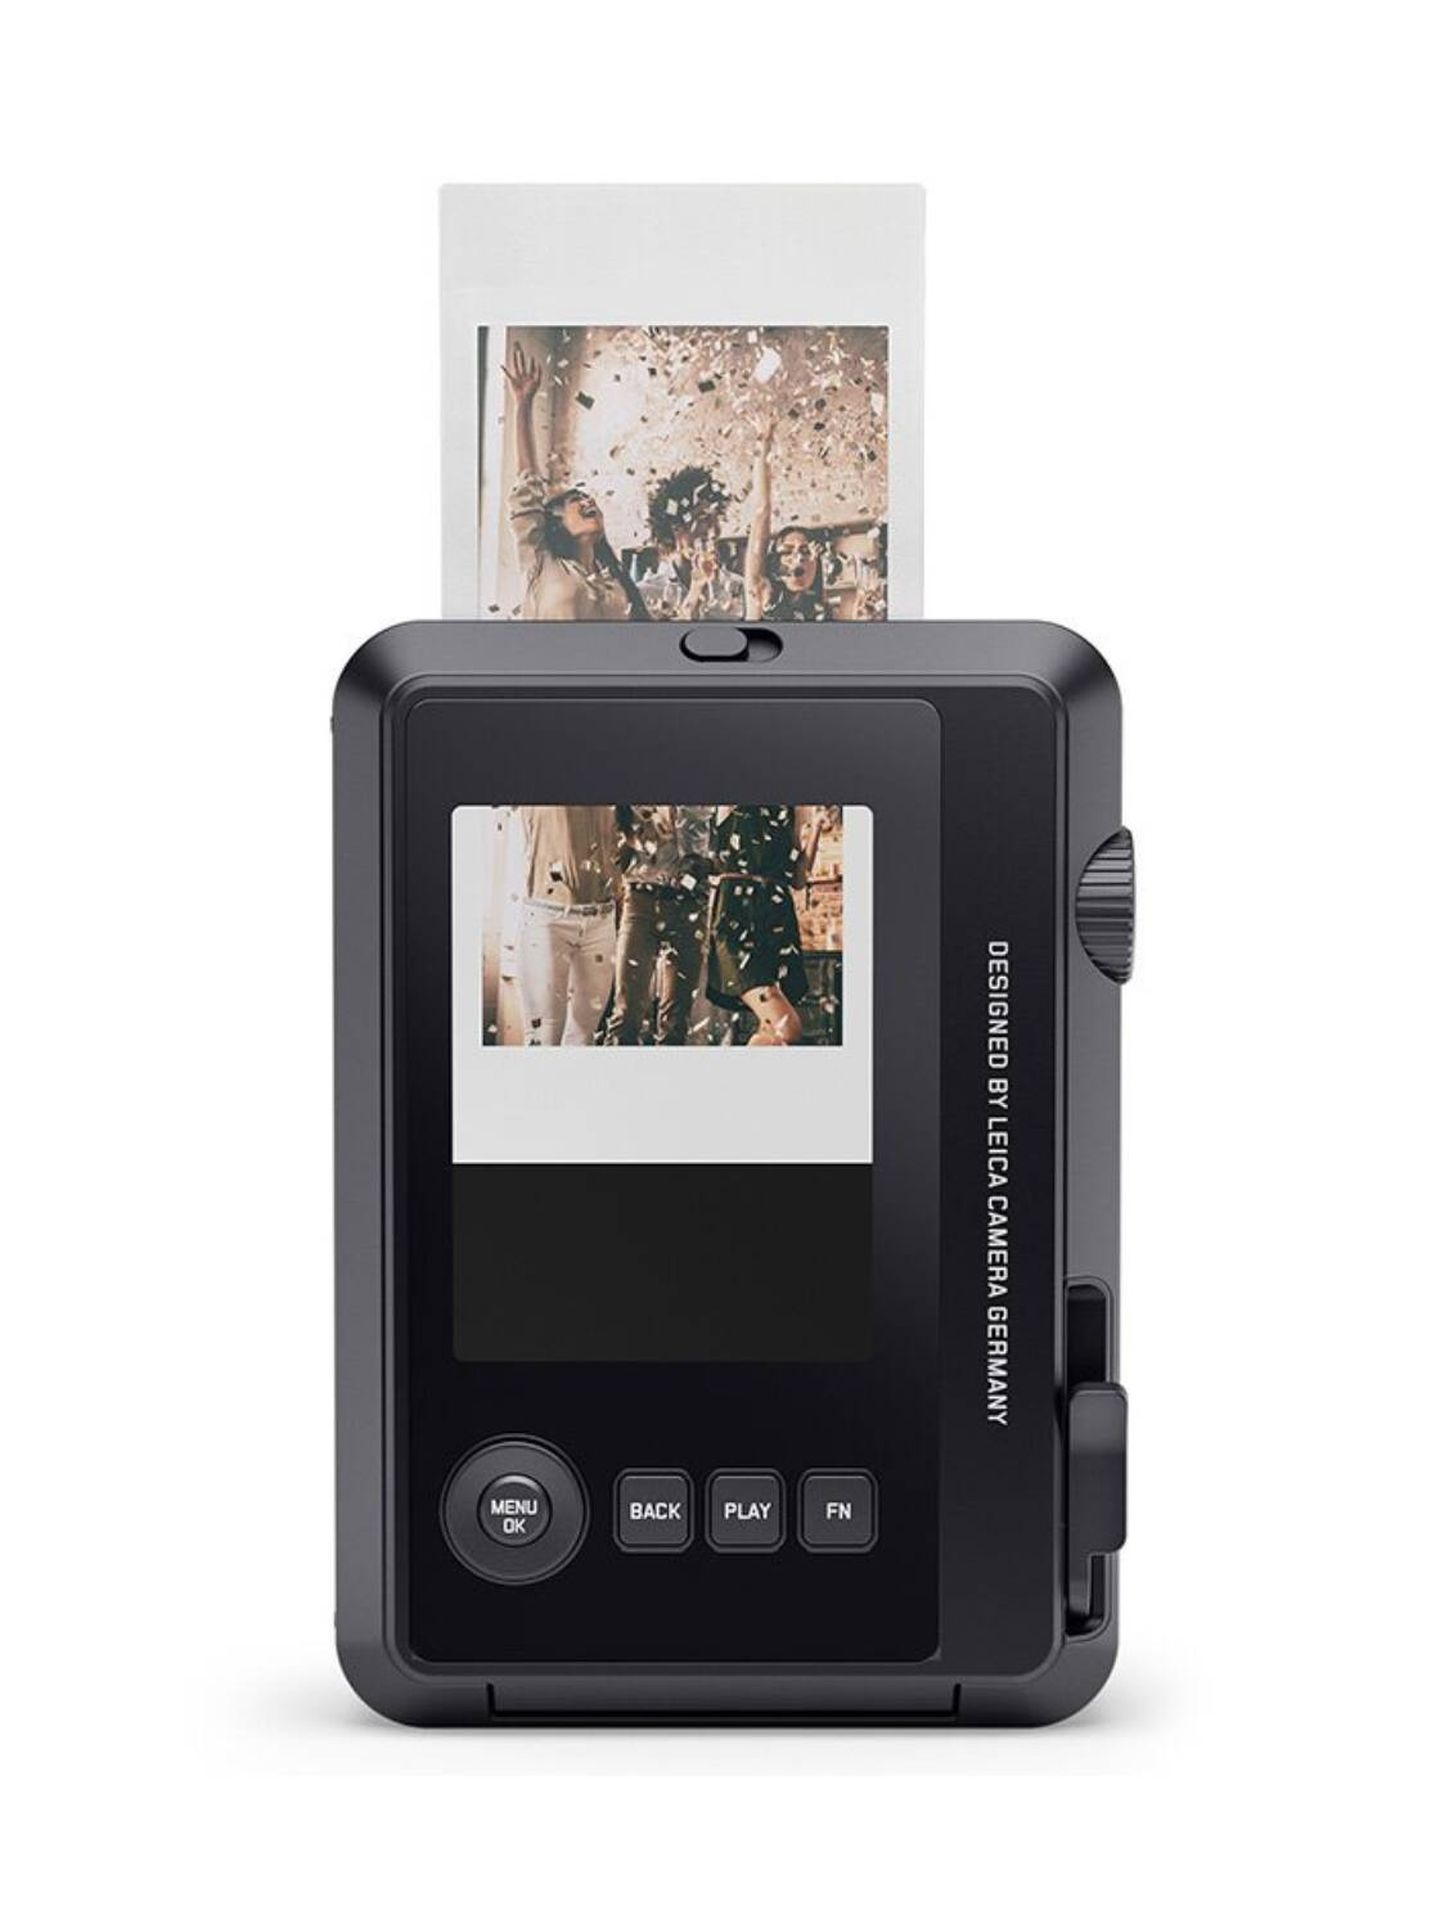 La Leica Sofort 2 es capaz de imprimir en una resolución de 1600 x 1600 píxeles. (Cortesía)